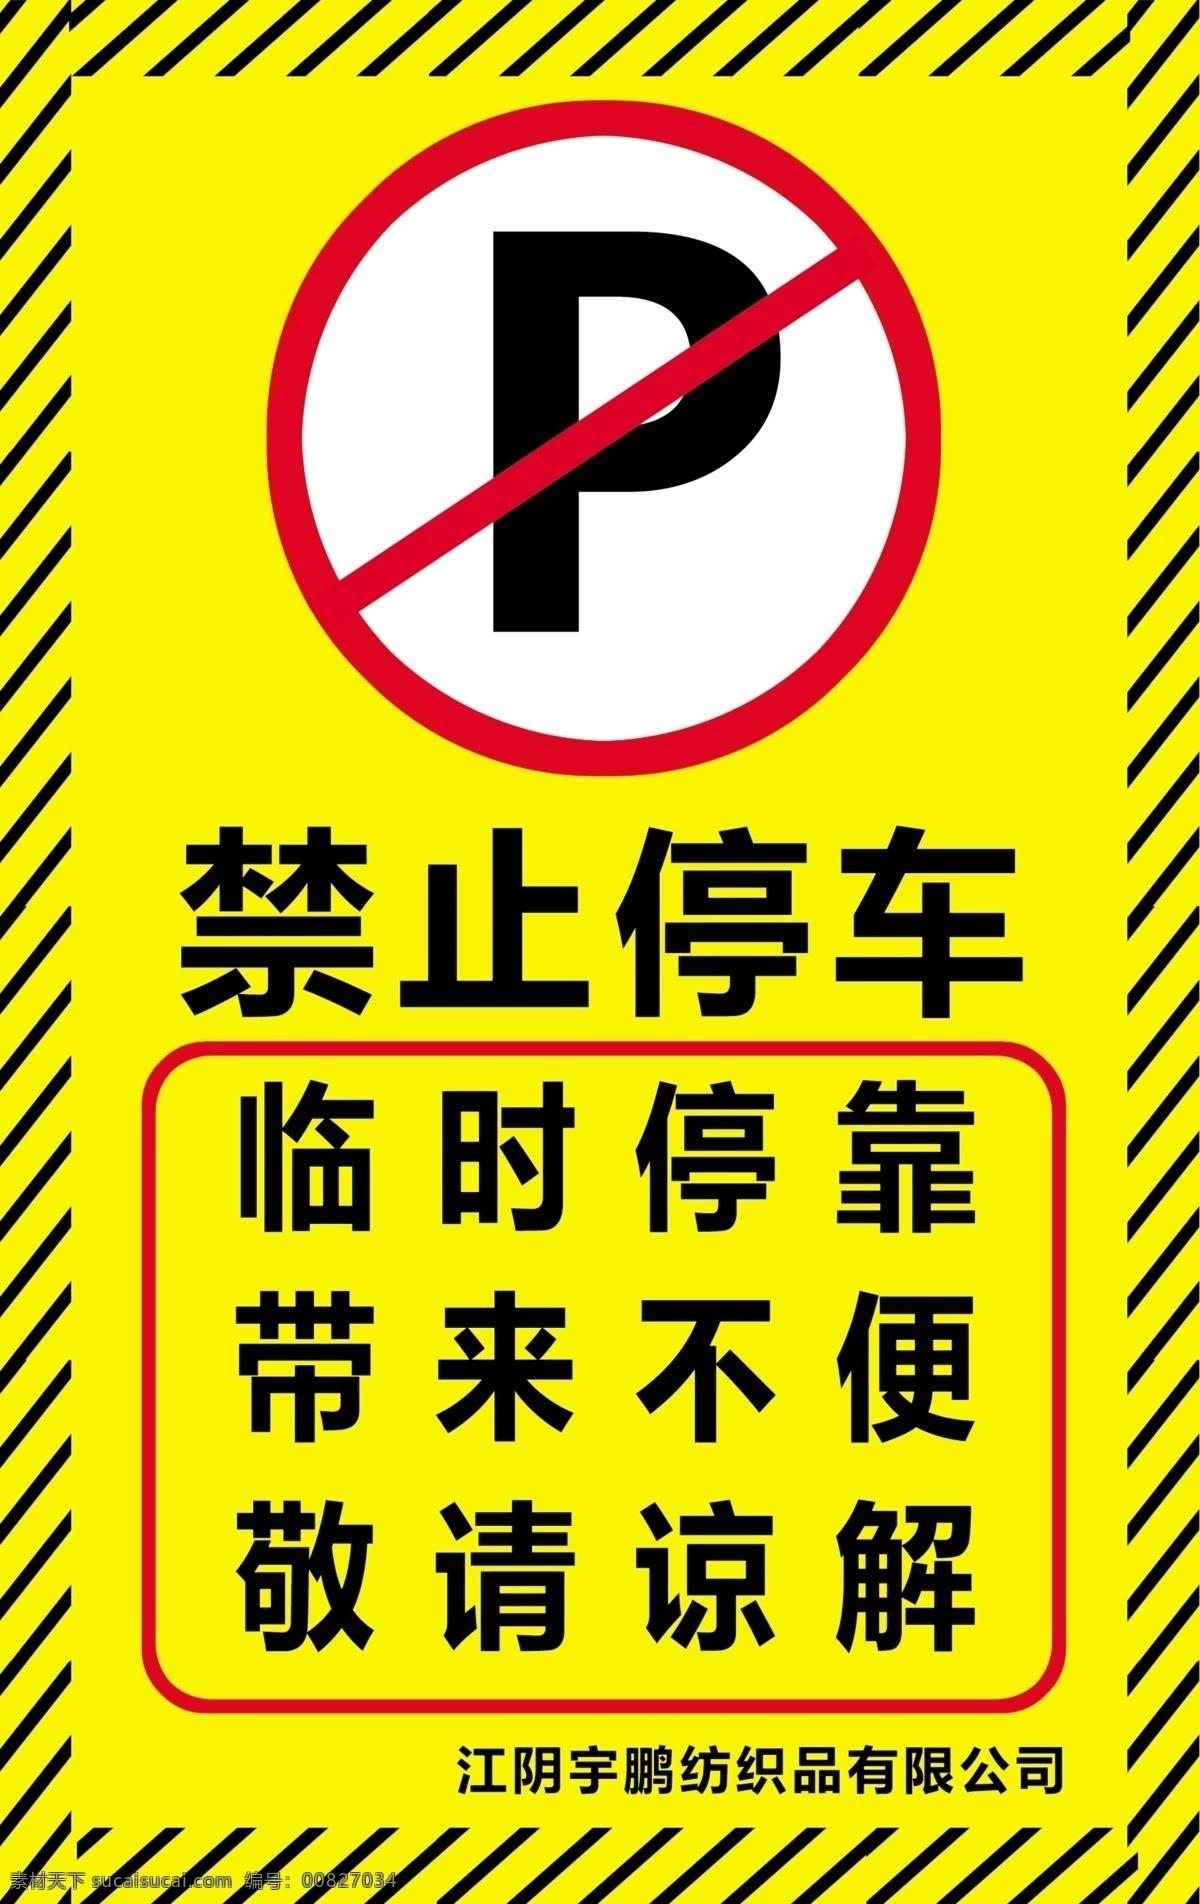 禁止停车 临时停靠 禁止 停车 临时 停靠 温馨提示 宣传海报